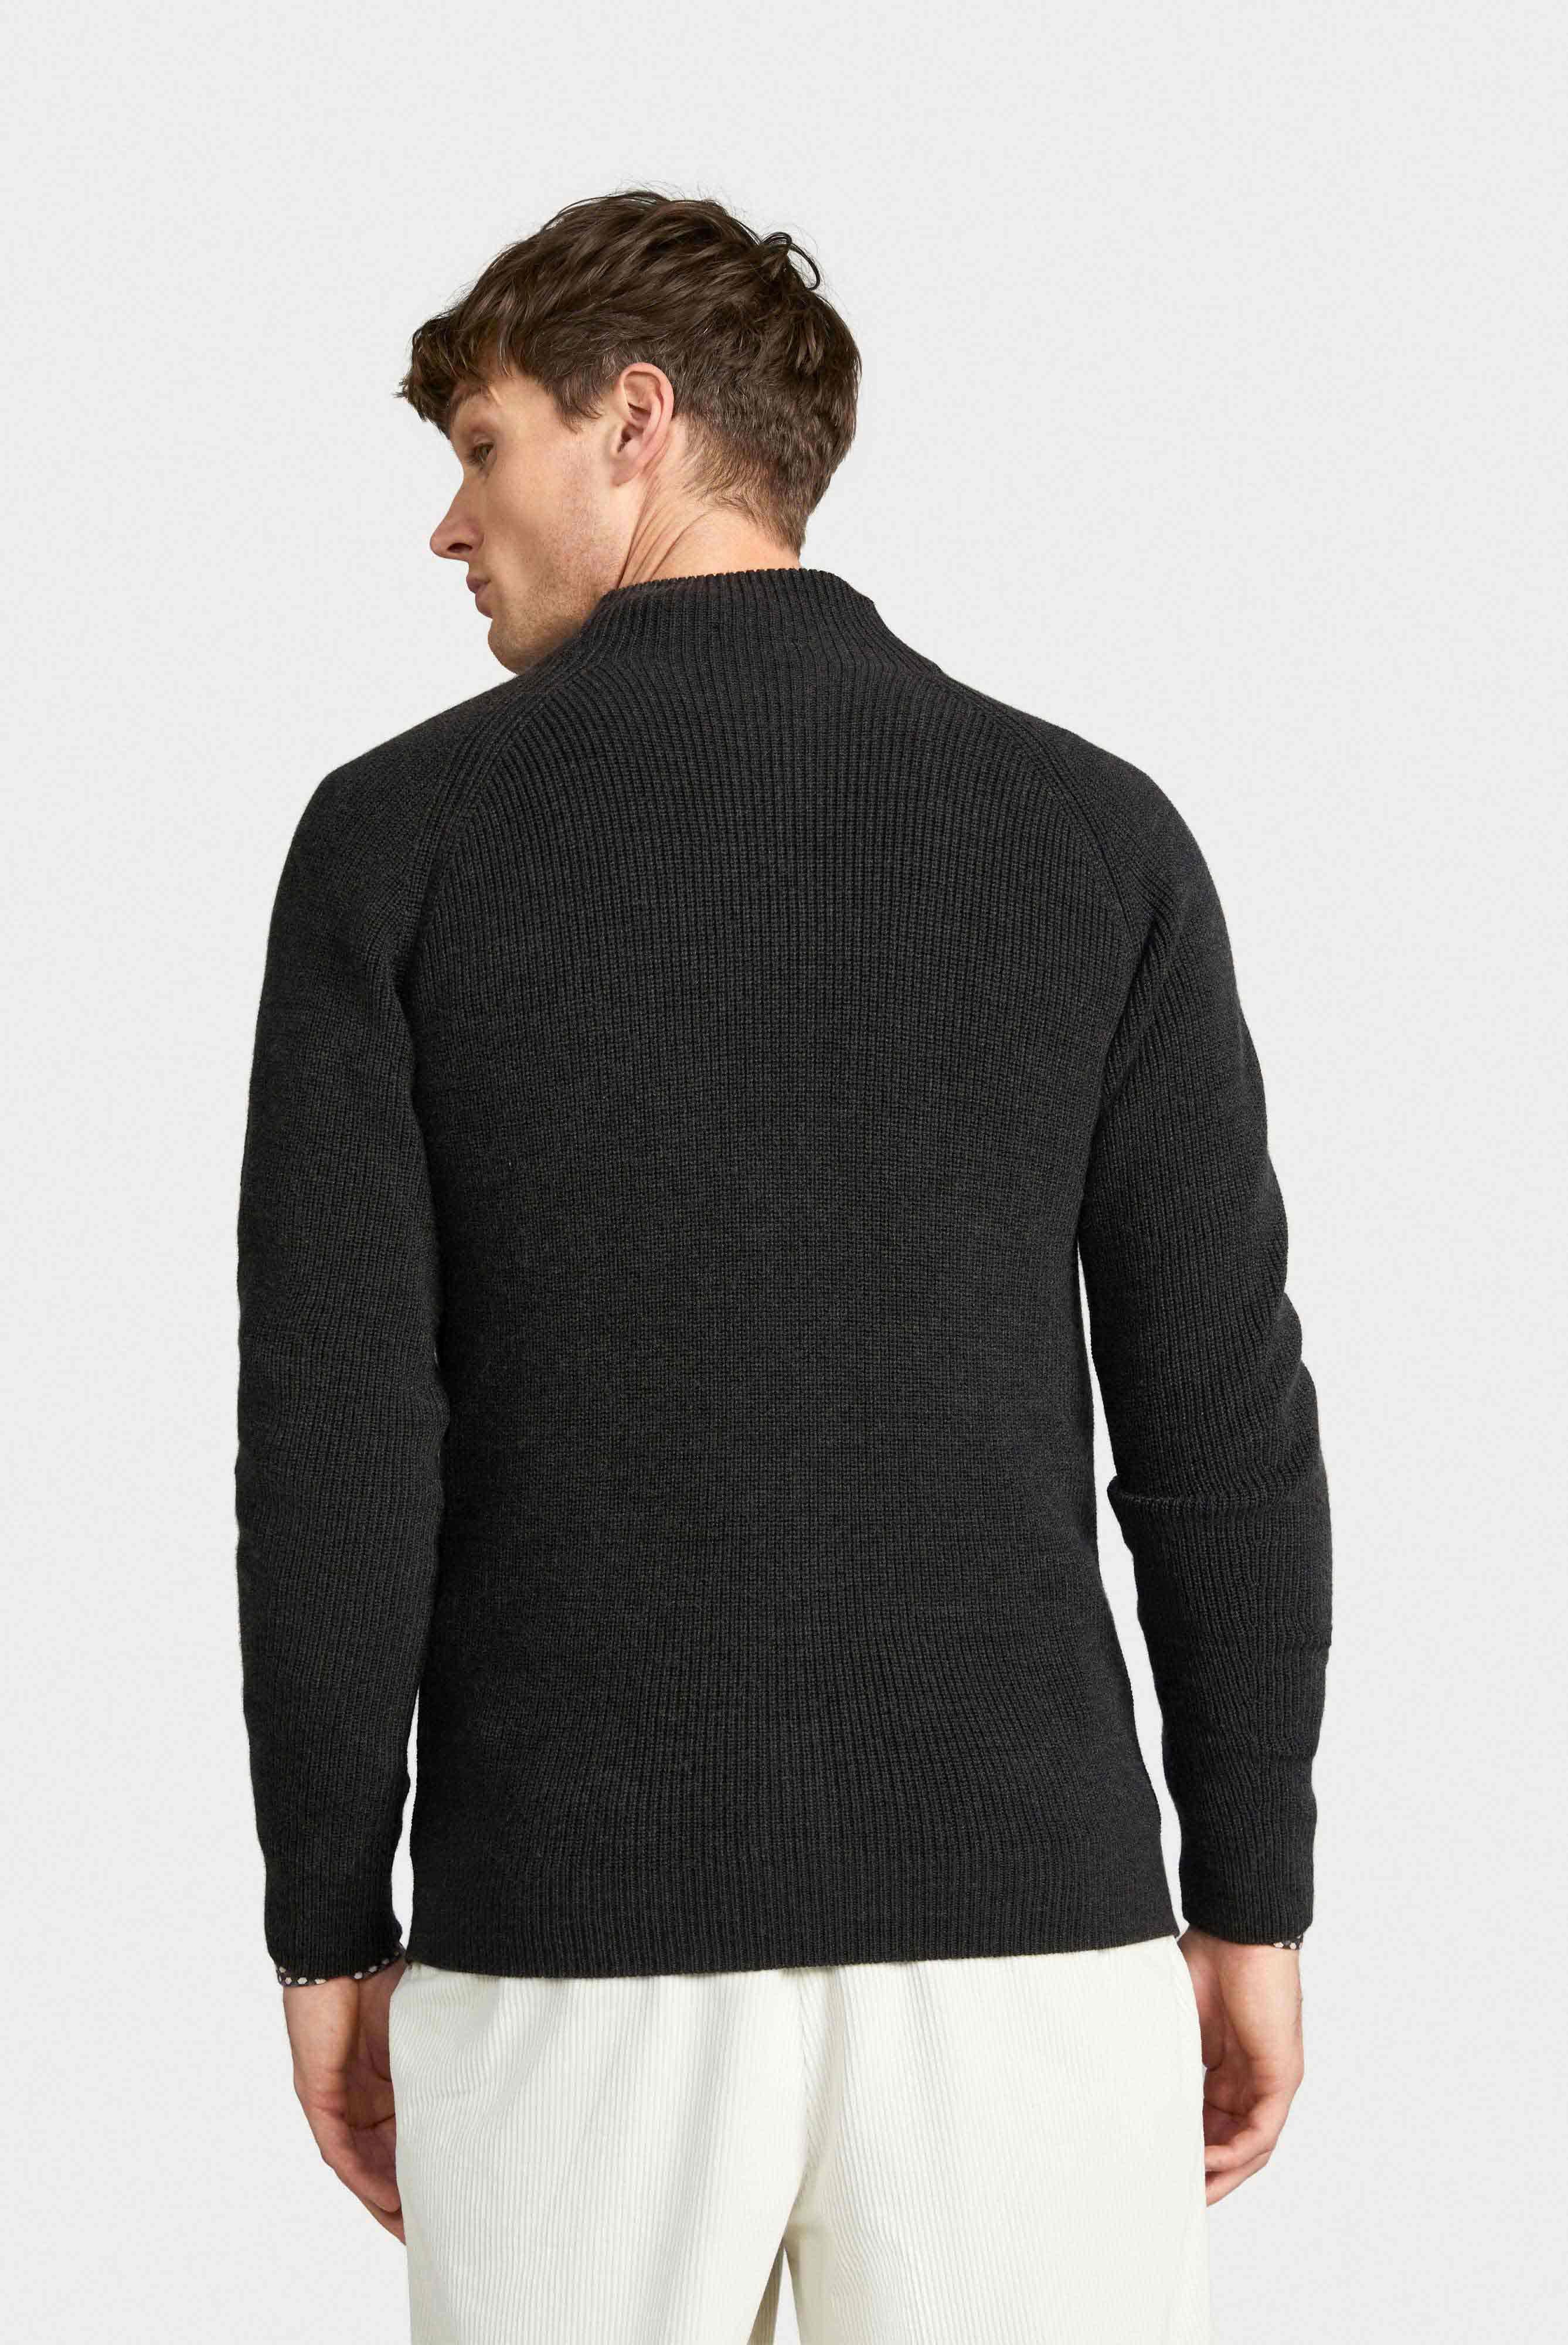 Sweaters & Cardigans+Zip Jacket in Mercerized Merino+82.8621..S00175.090.M